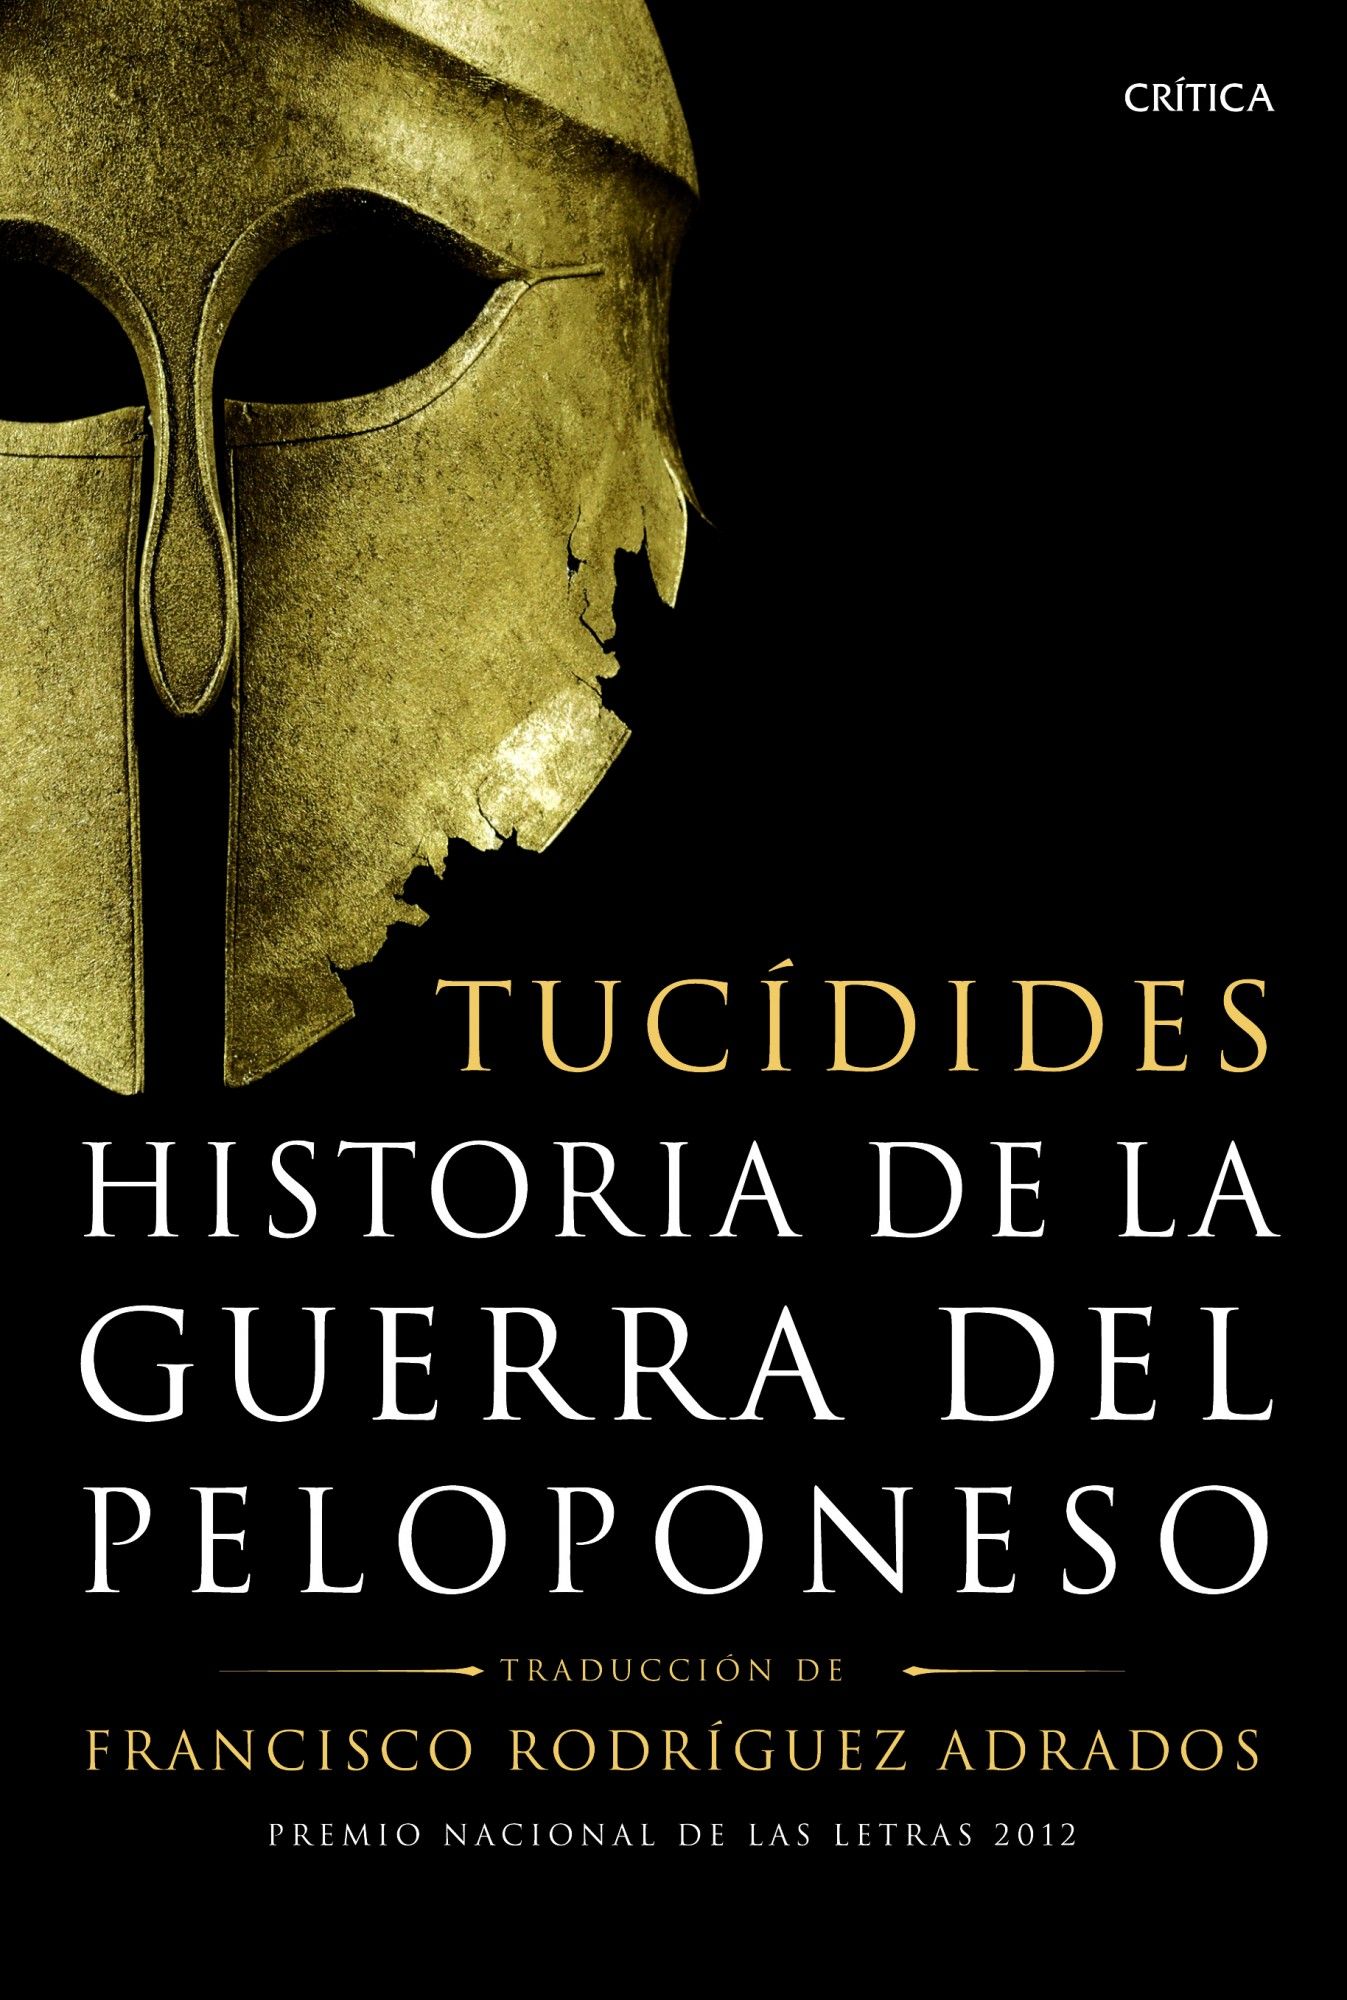 HISTORIA DE LA GUERRA DEL PELOPONESO. TRADUCCIÓN, INTRODUCCIÓN Y NOTAS DE FRANCISCO RODRÍGUEZ ADRADOS